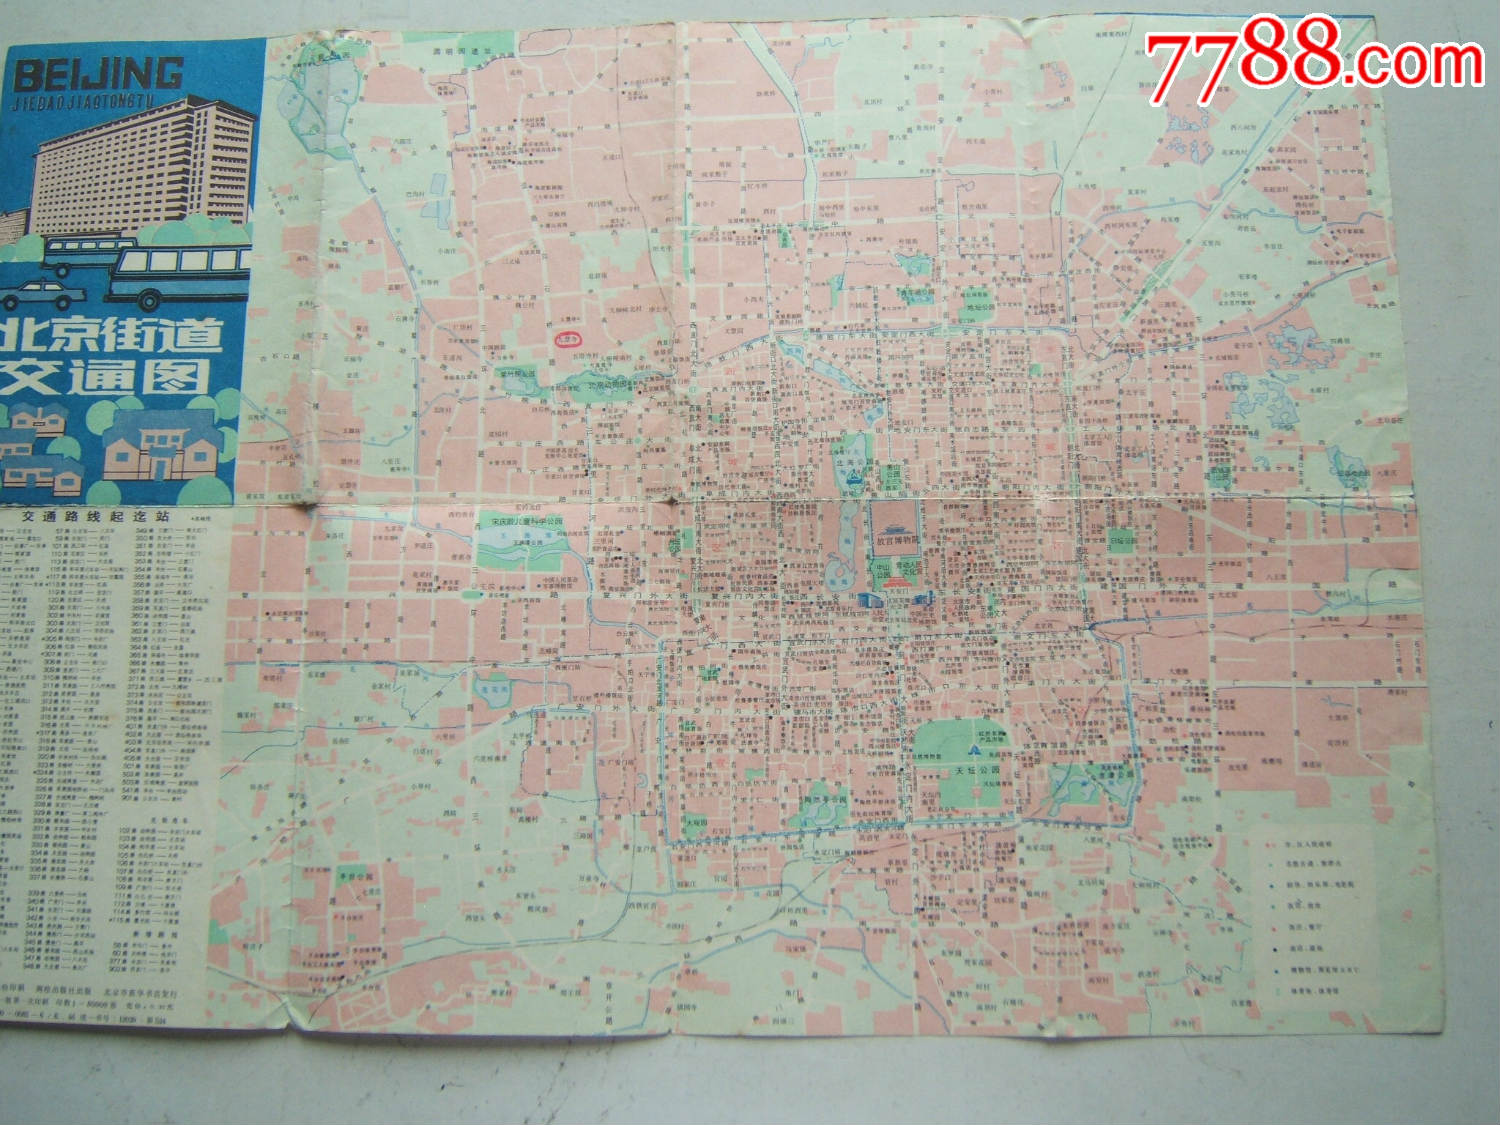 《北京街道交通图》折叠一张,彩色印刷,1987年一版一印